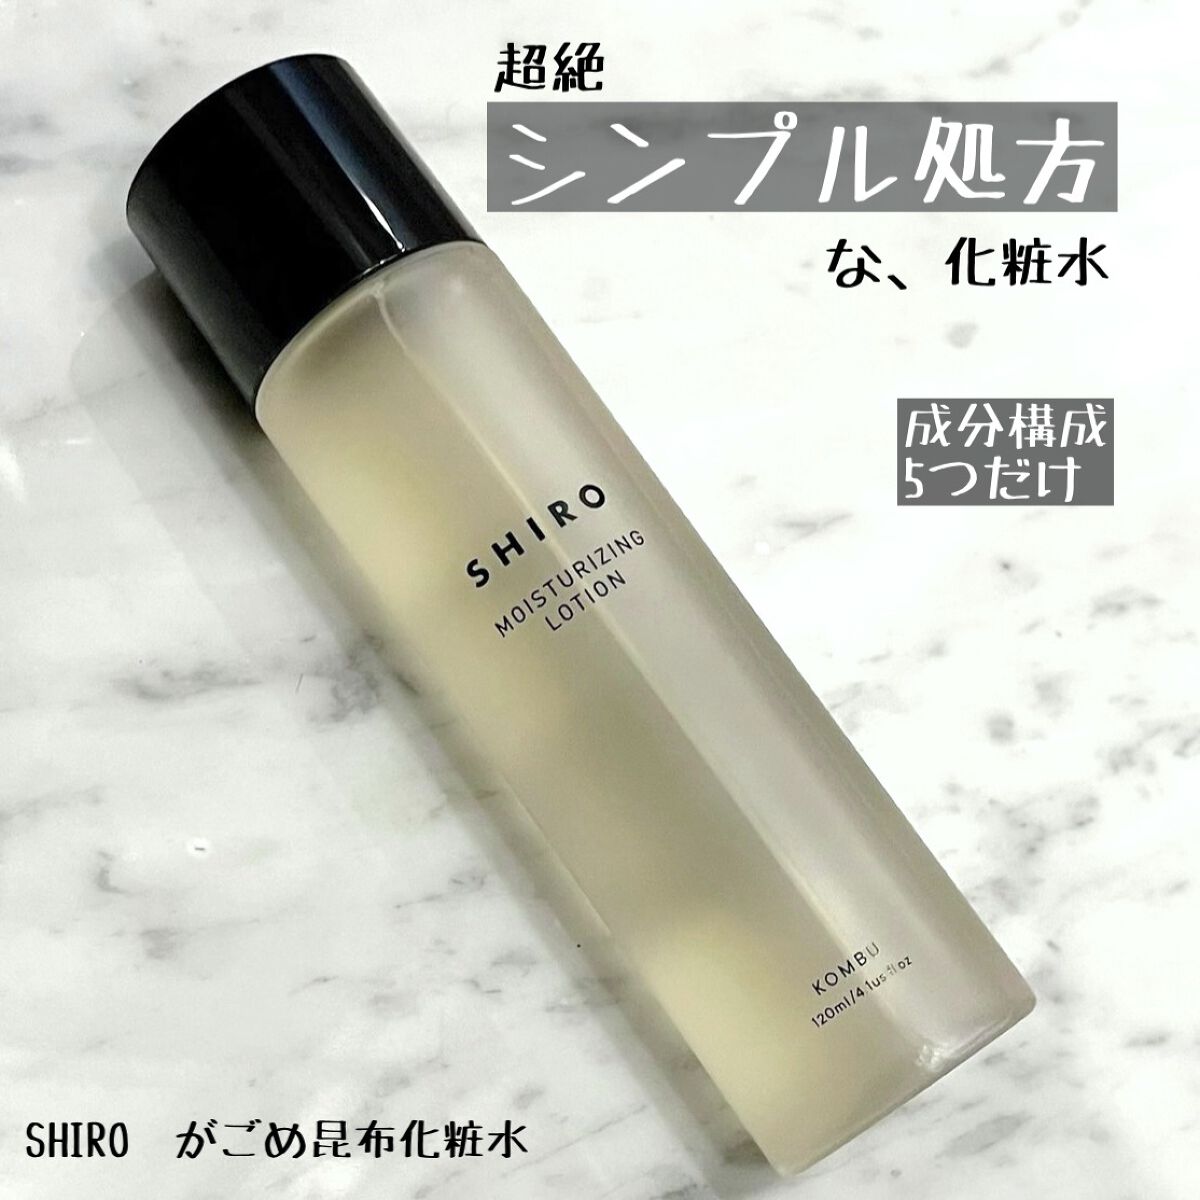 SHIRO Kombu Moisturizing Lotion 昆布化妝水 天然成分提取無添加 がごめ昆布化粧水 120ml